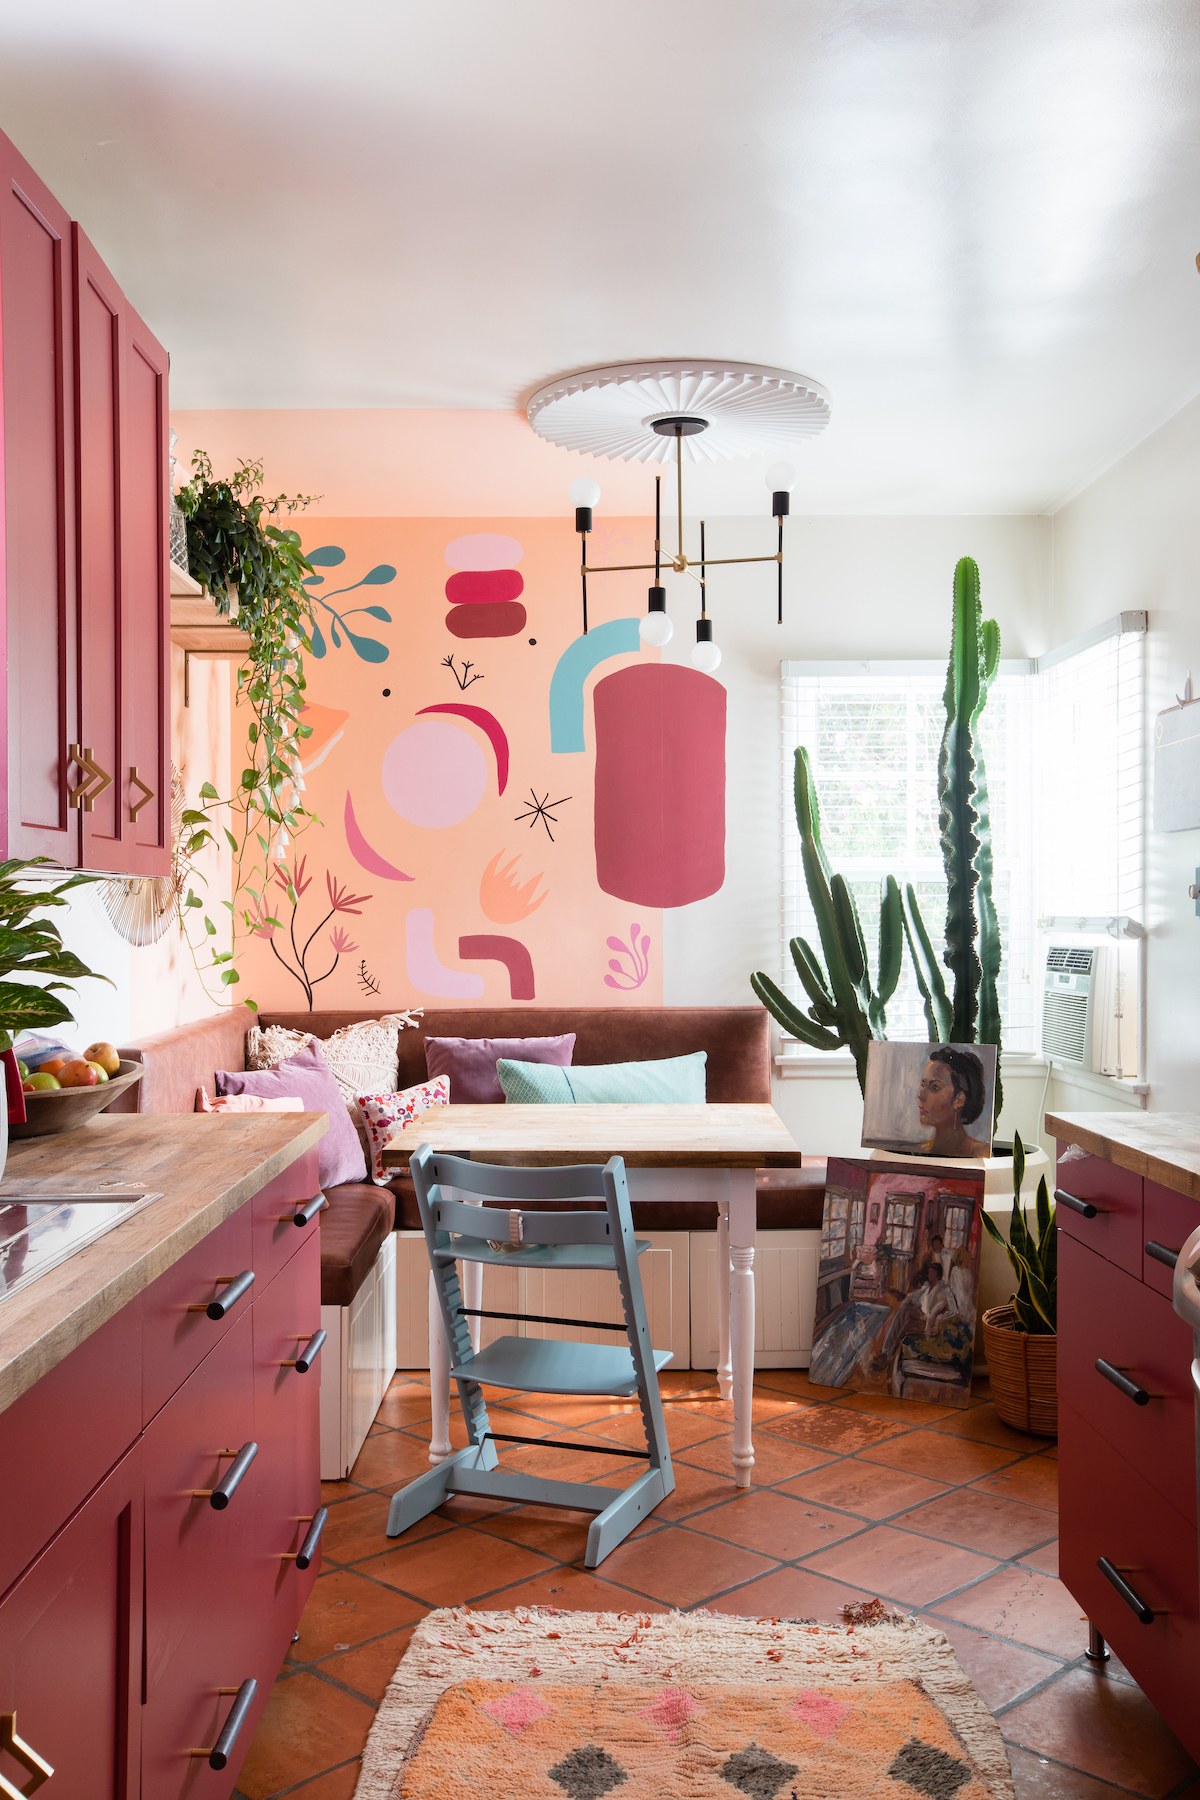 maison maximaliste cuisine salon framboise couleurs décoration originale - blog déco - clem around the corner